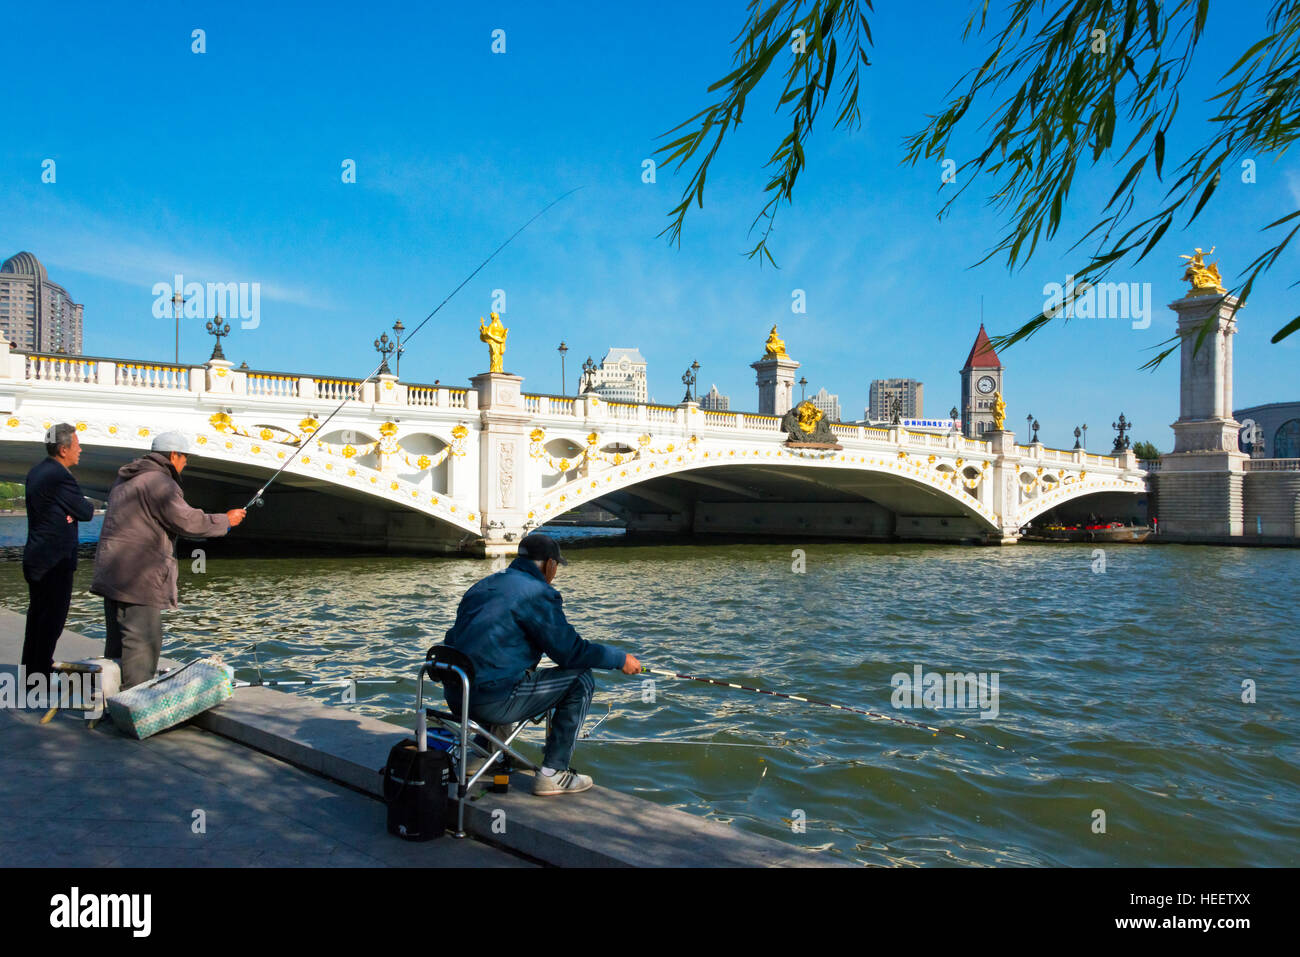 People fishing by Beian Bridge across Haihe River, Tianjin, China Stock Photo